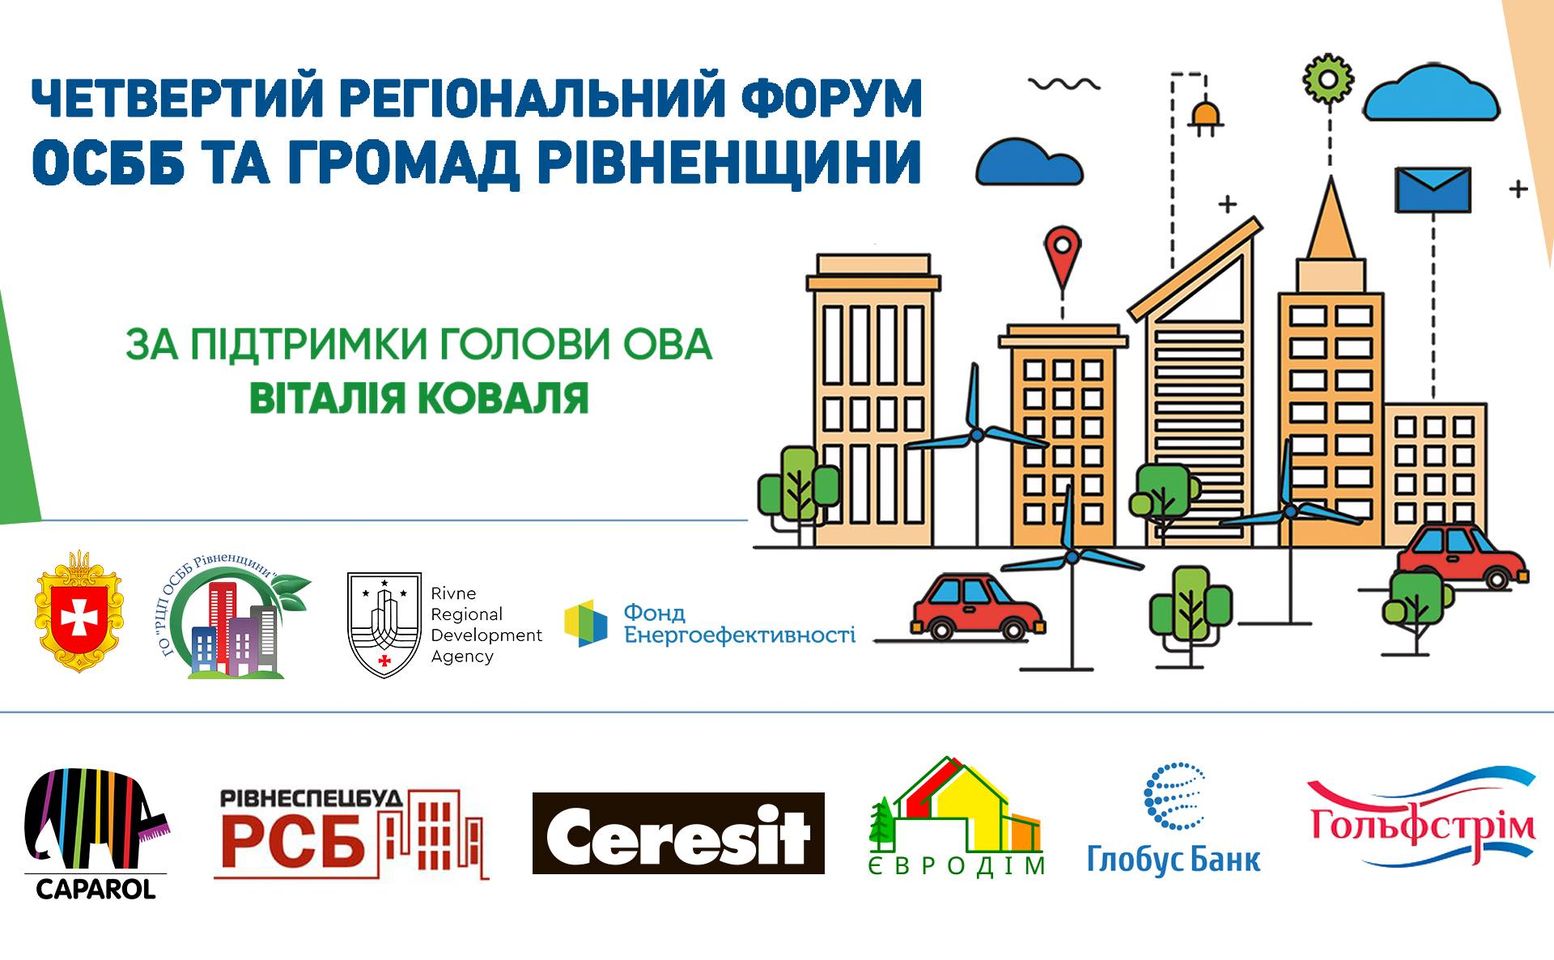 Четвертий регіональний форум ОСББ відбудеться на Рівненщині